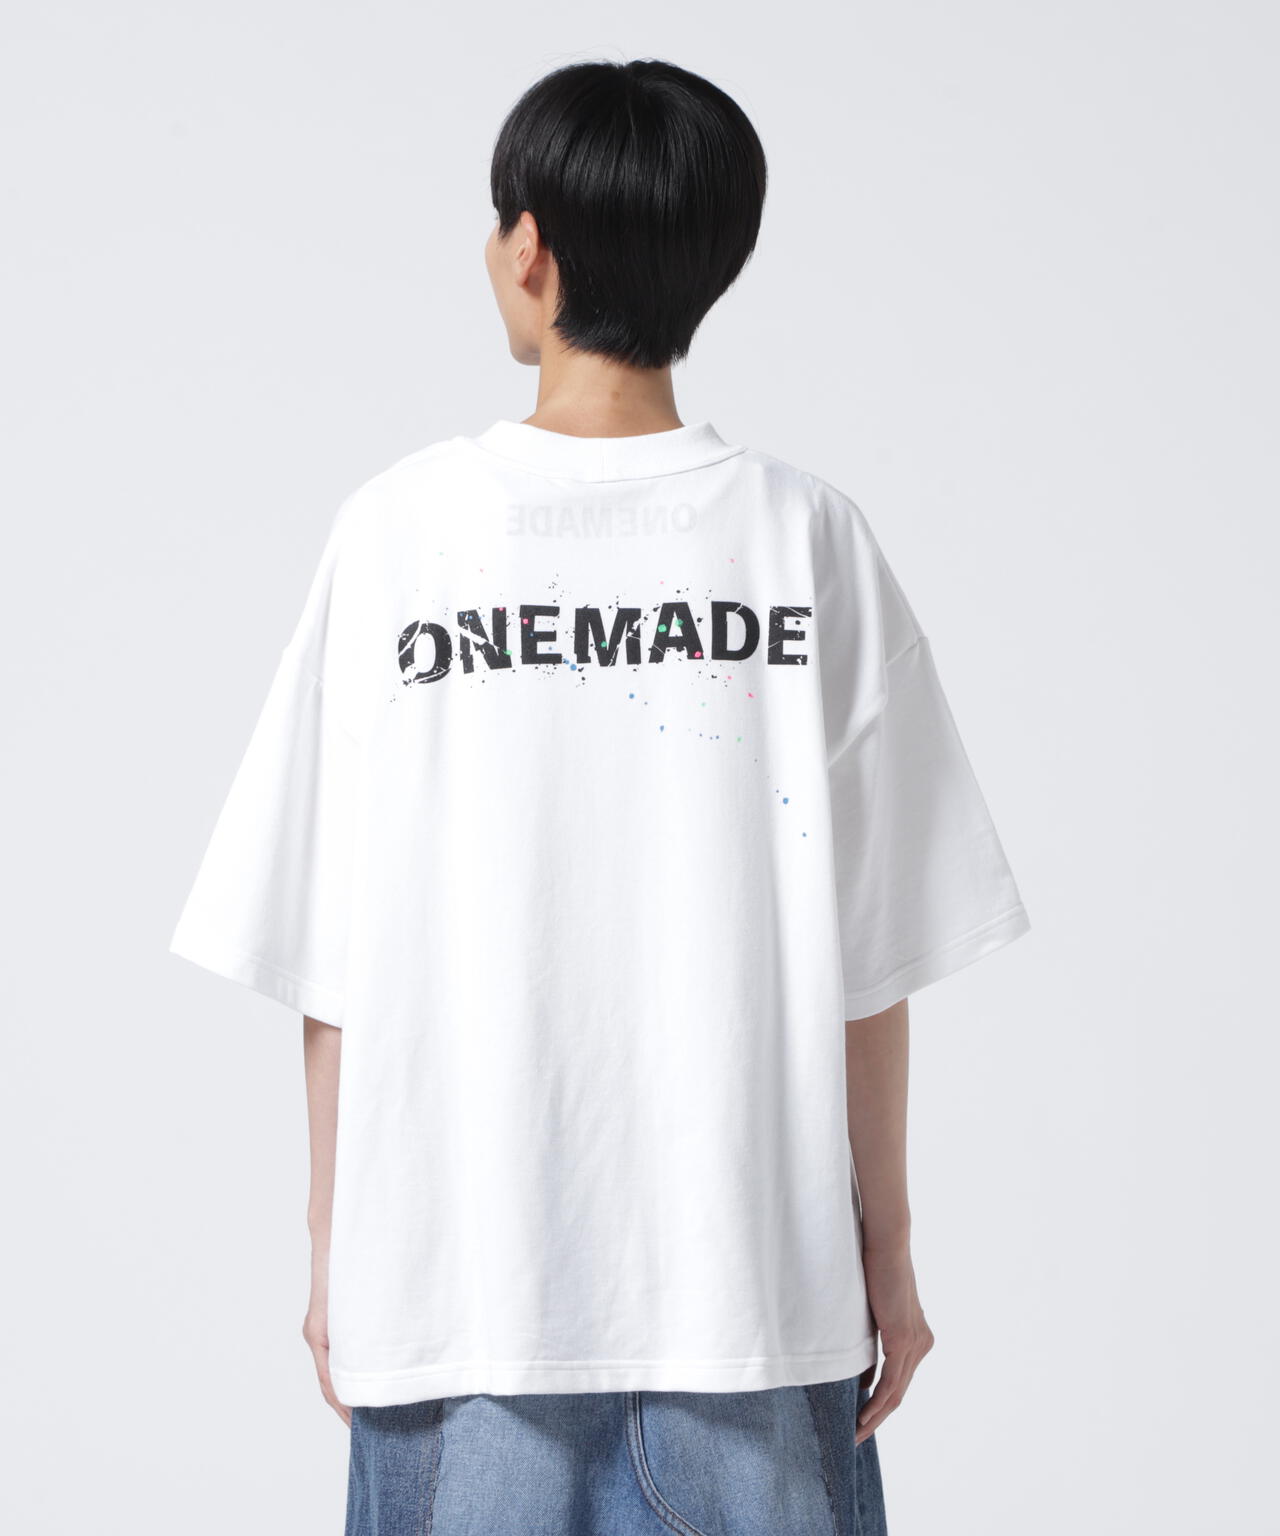 ワンメイド/ONE MADE TシャツSサイズ